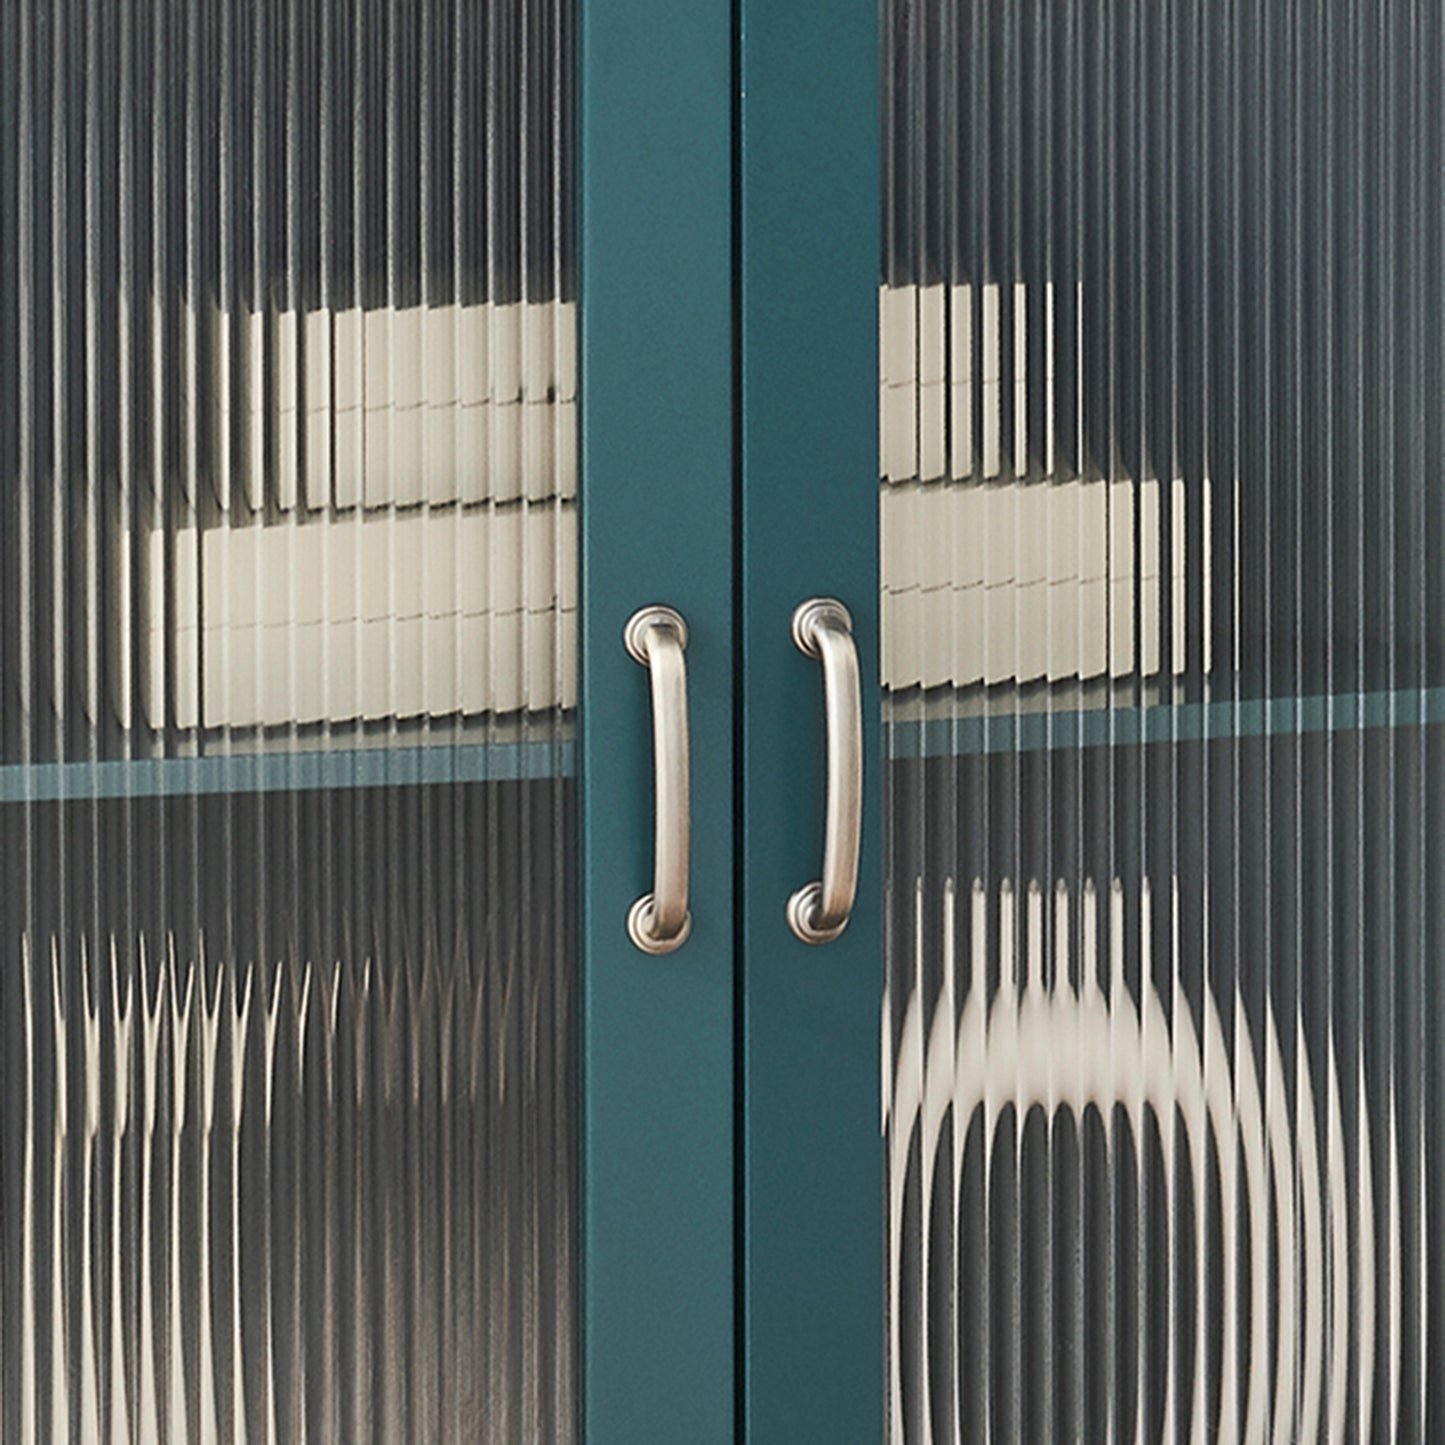 JaydenMax Corner Cabinet with Fluted Door and Adjustable Shelf - Teal